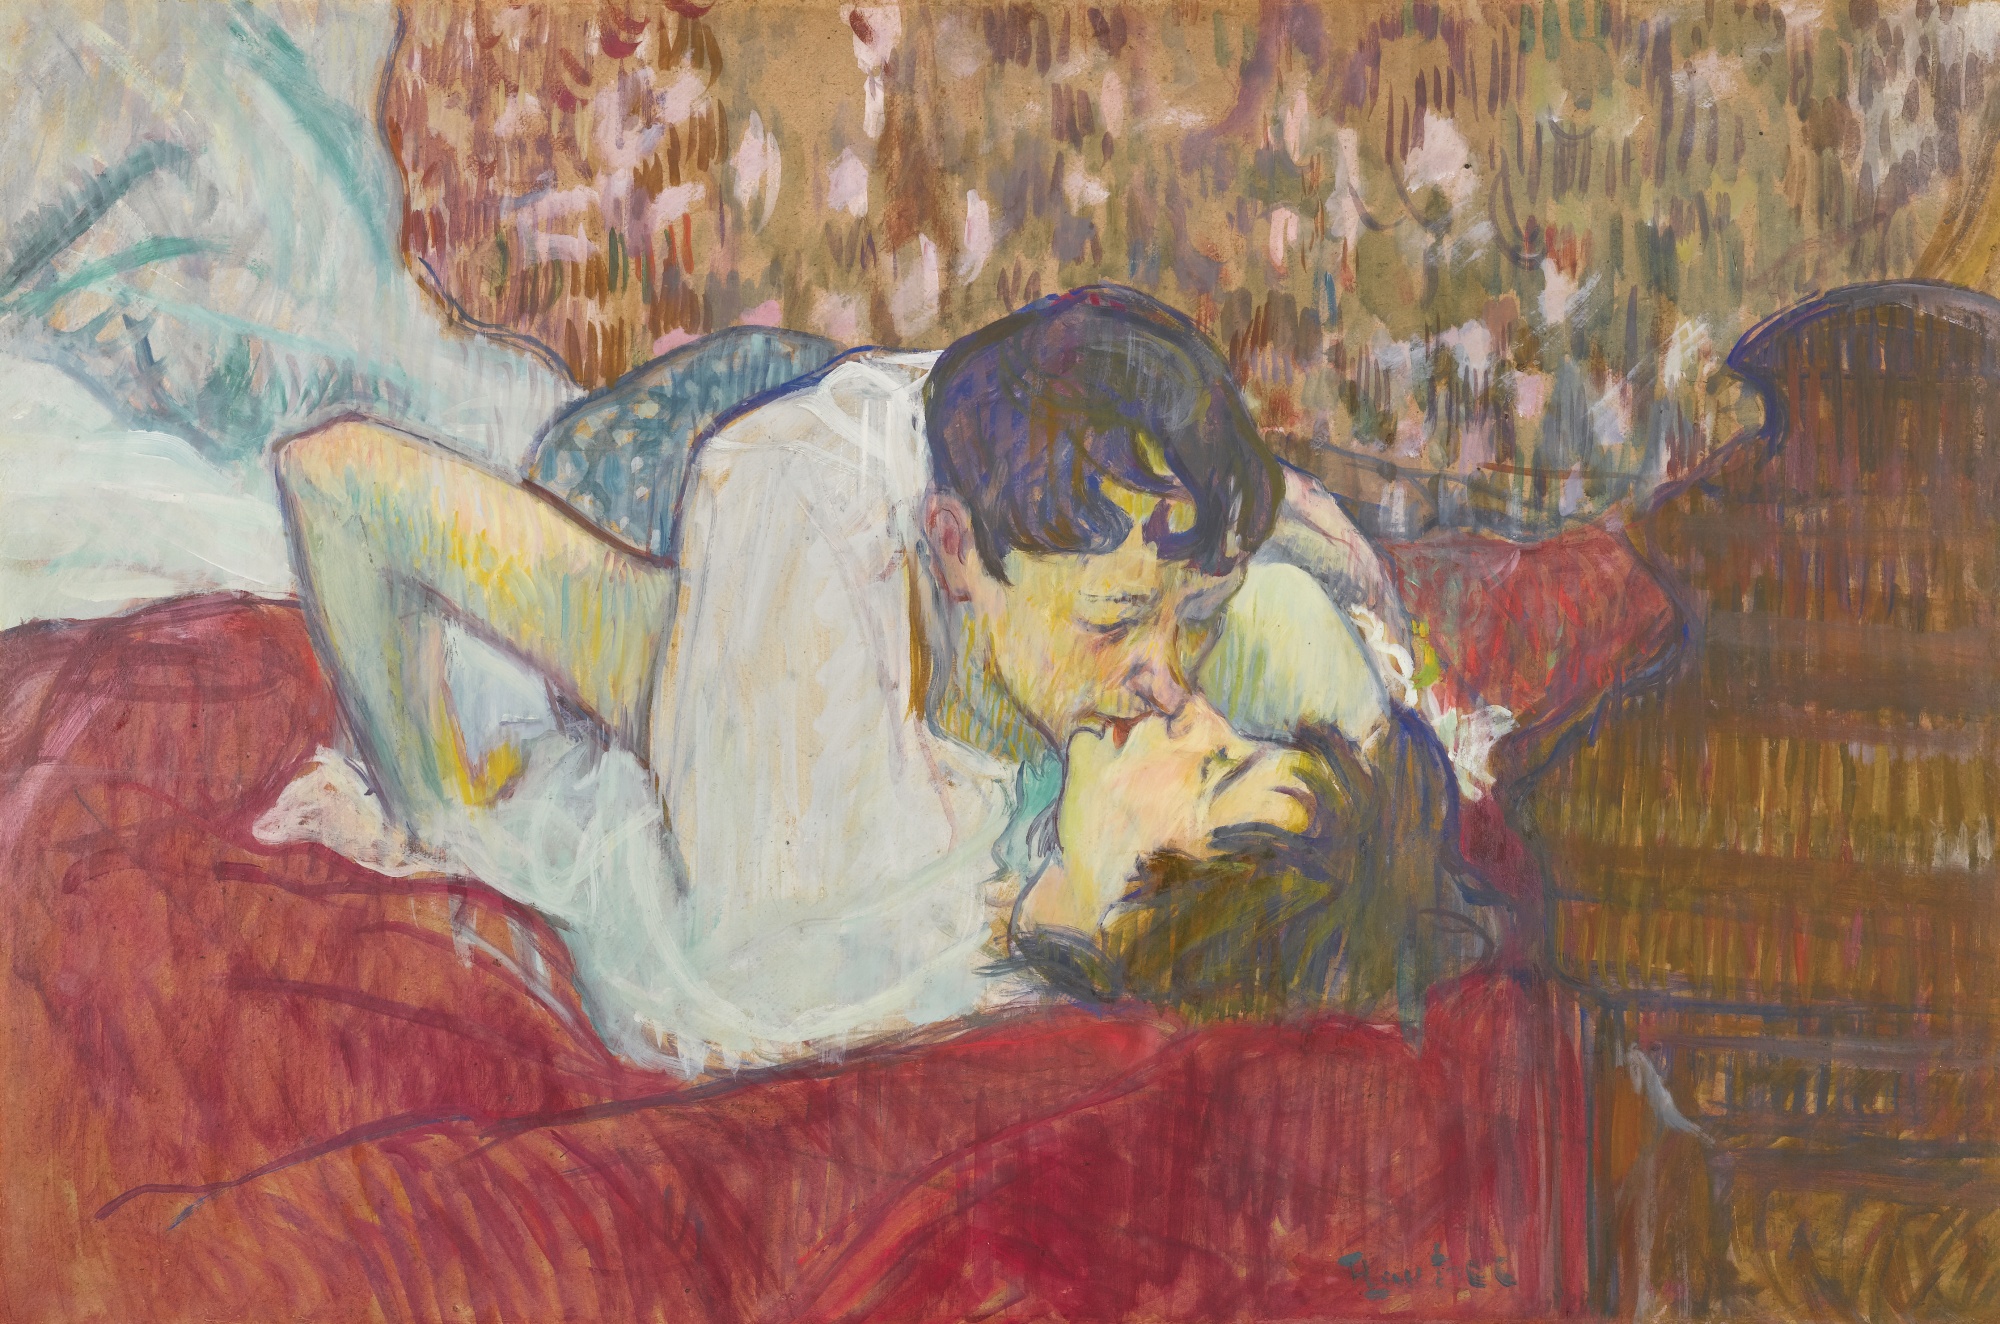 Toulouse Lautrec: Polibek v posteli / 1989 olej na plátně / 39 cm x 58 cm / Sotheby’s 3. 2. 2015 / 10 800 000 GBP